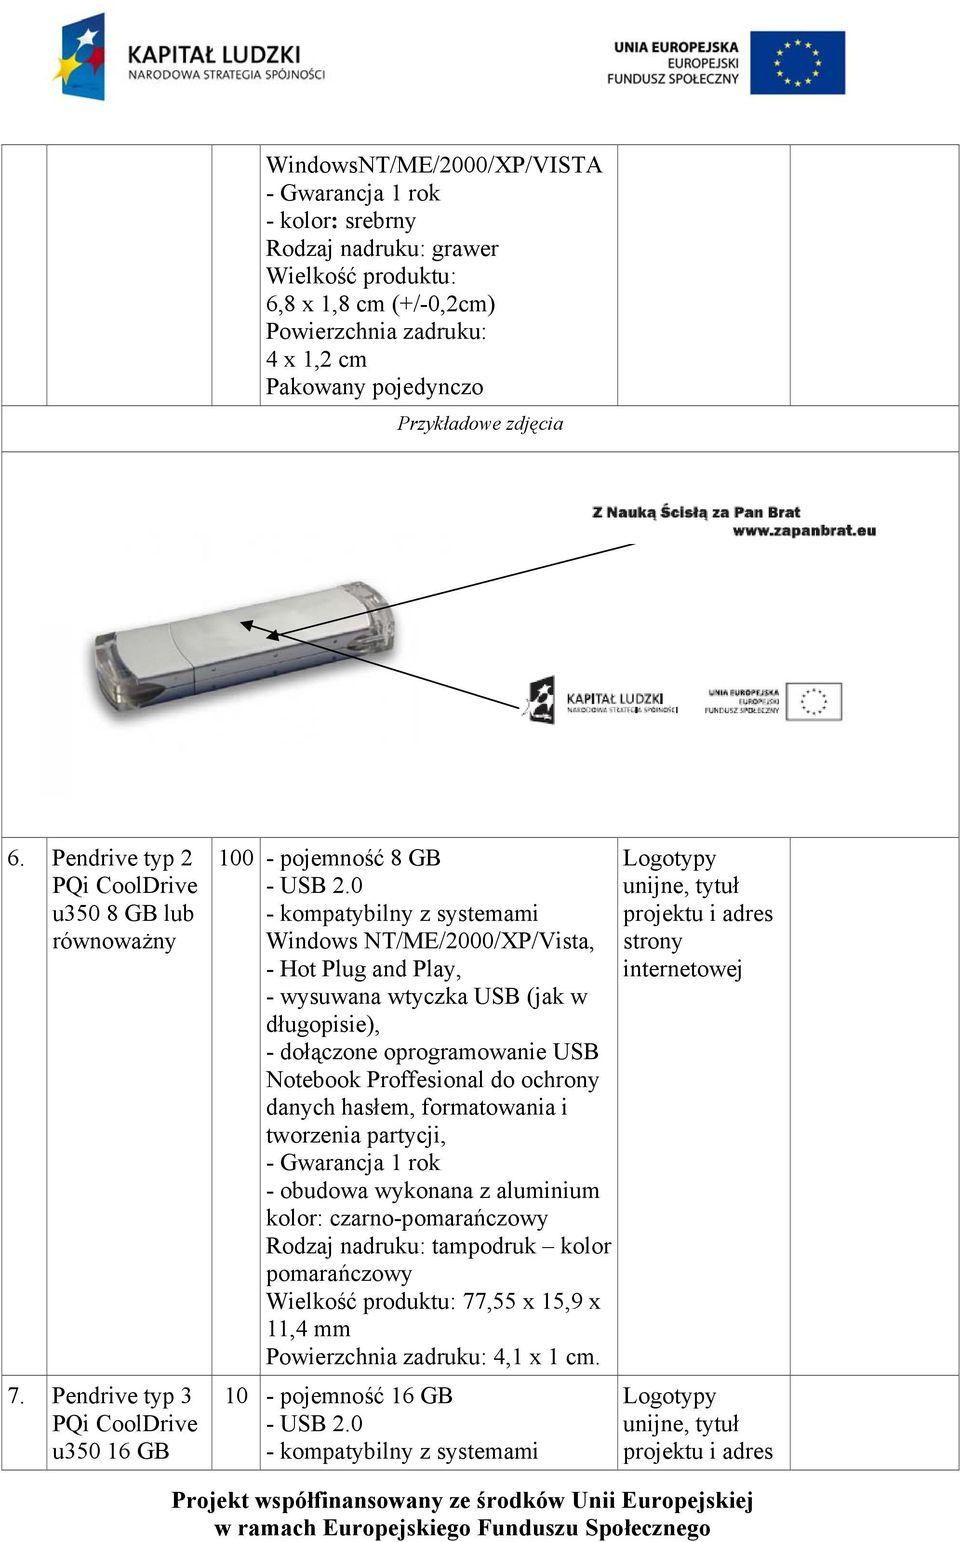 0 - kompatybilny z systemami Windows NT/ME/2000/XP/Vista, - Hot Plug and Play, - wysuwana wtyczka USB (jak w długopisie), - dołączone oprogramowanie USB Notebook Proffesional do ochrony danych